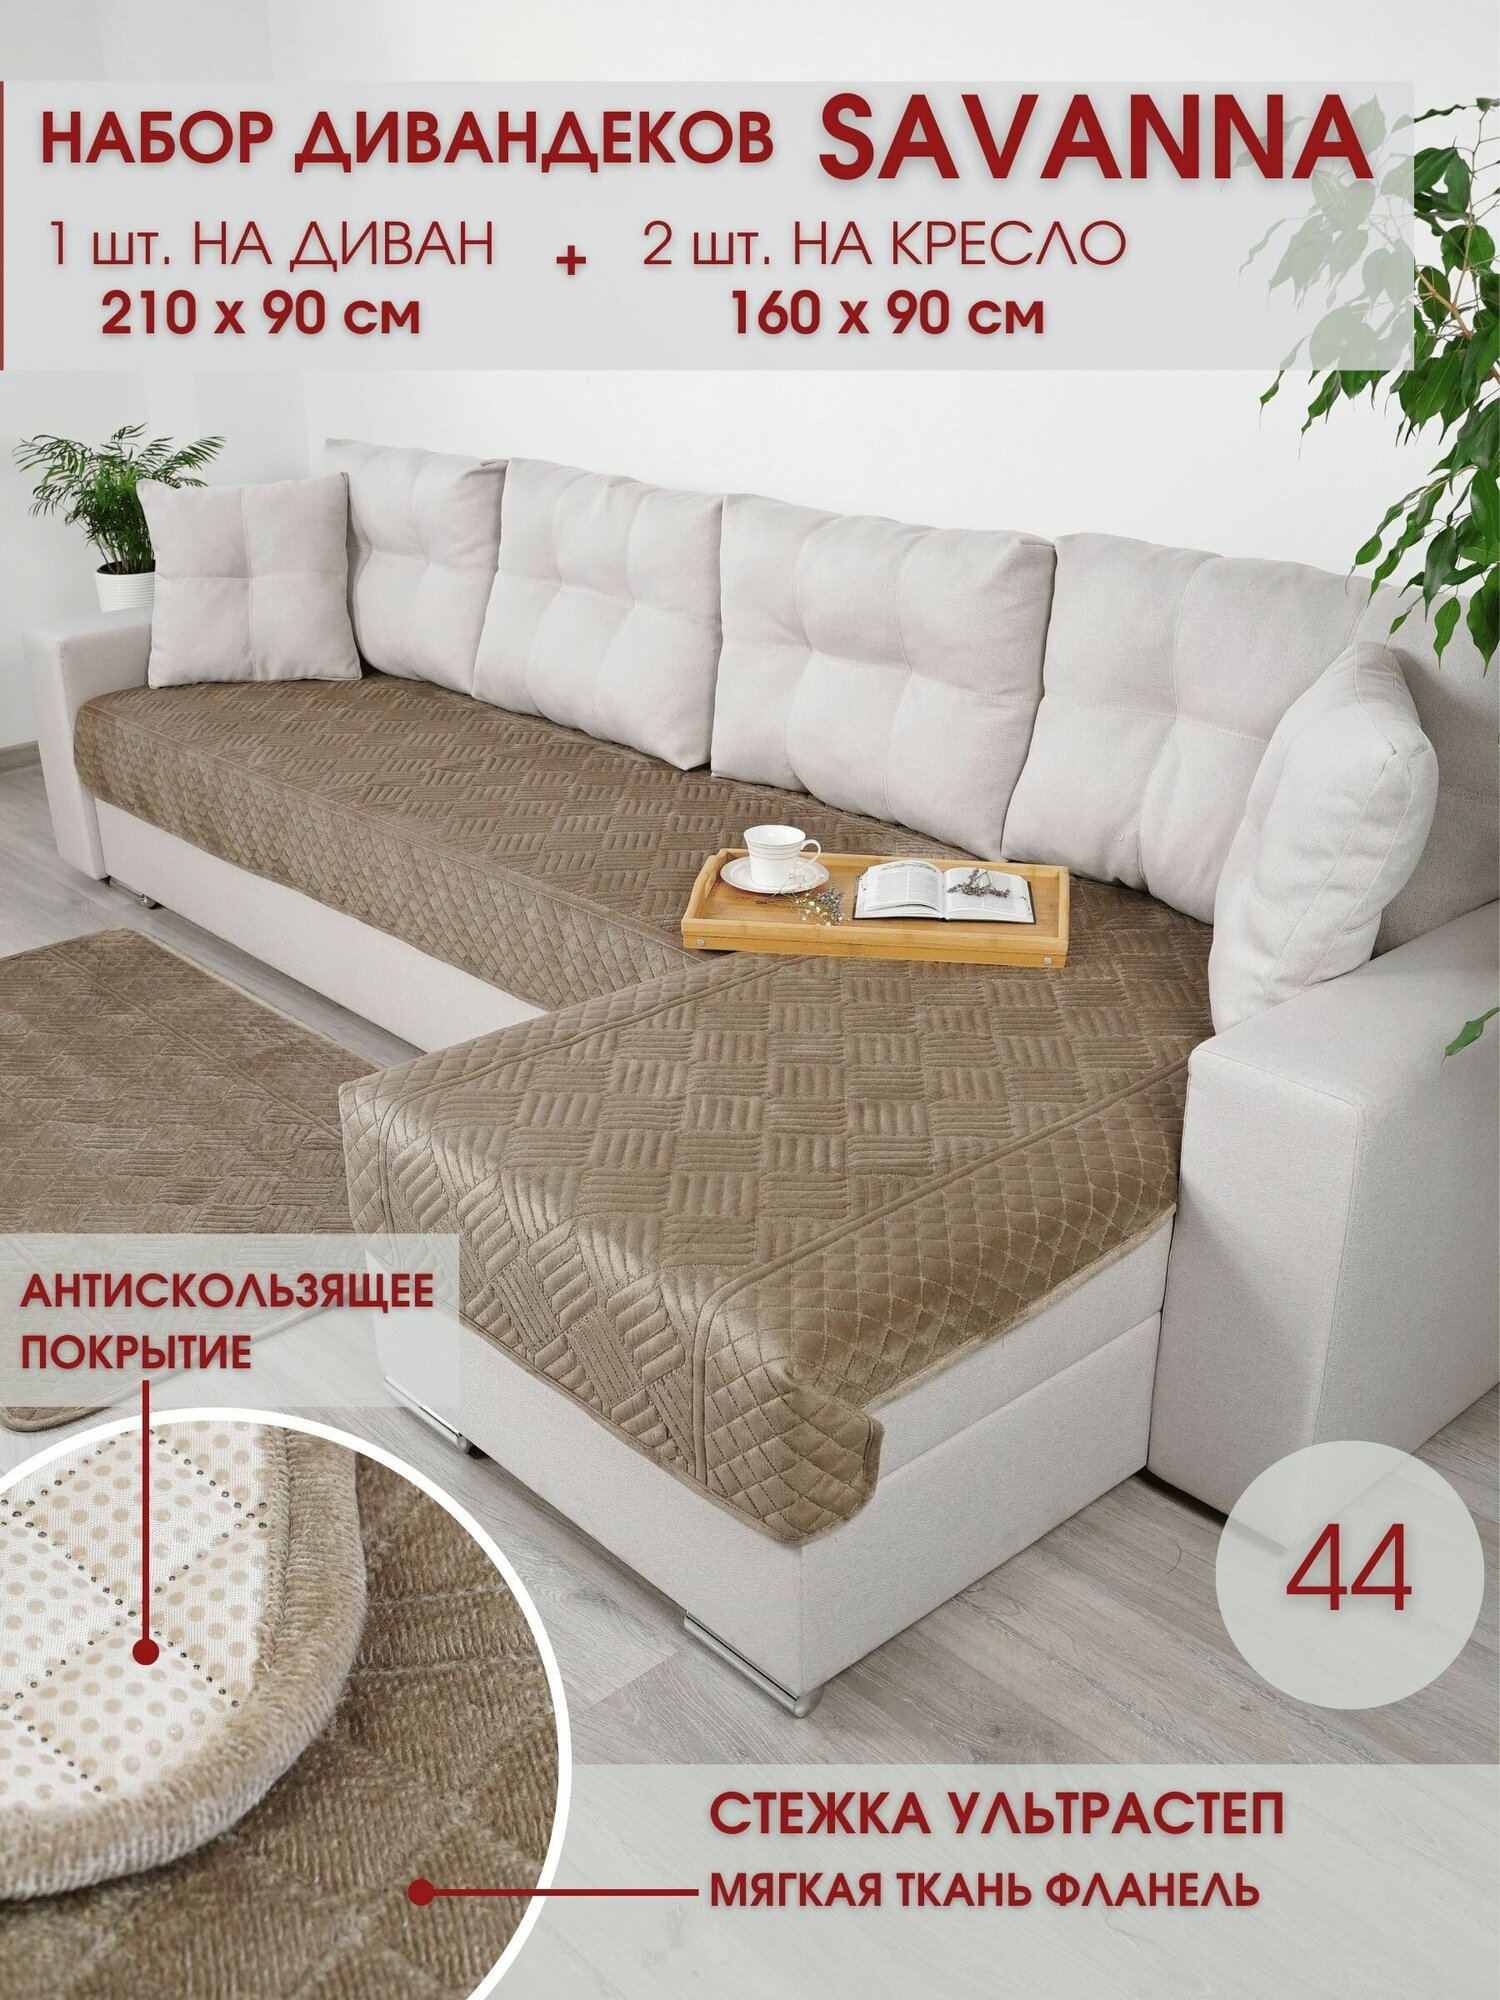 Набор накидок на диван и кресла / Набор чехлов на мебель / для дивана и кресел / Marianna SAVANNA 44